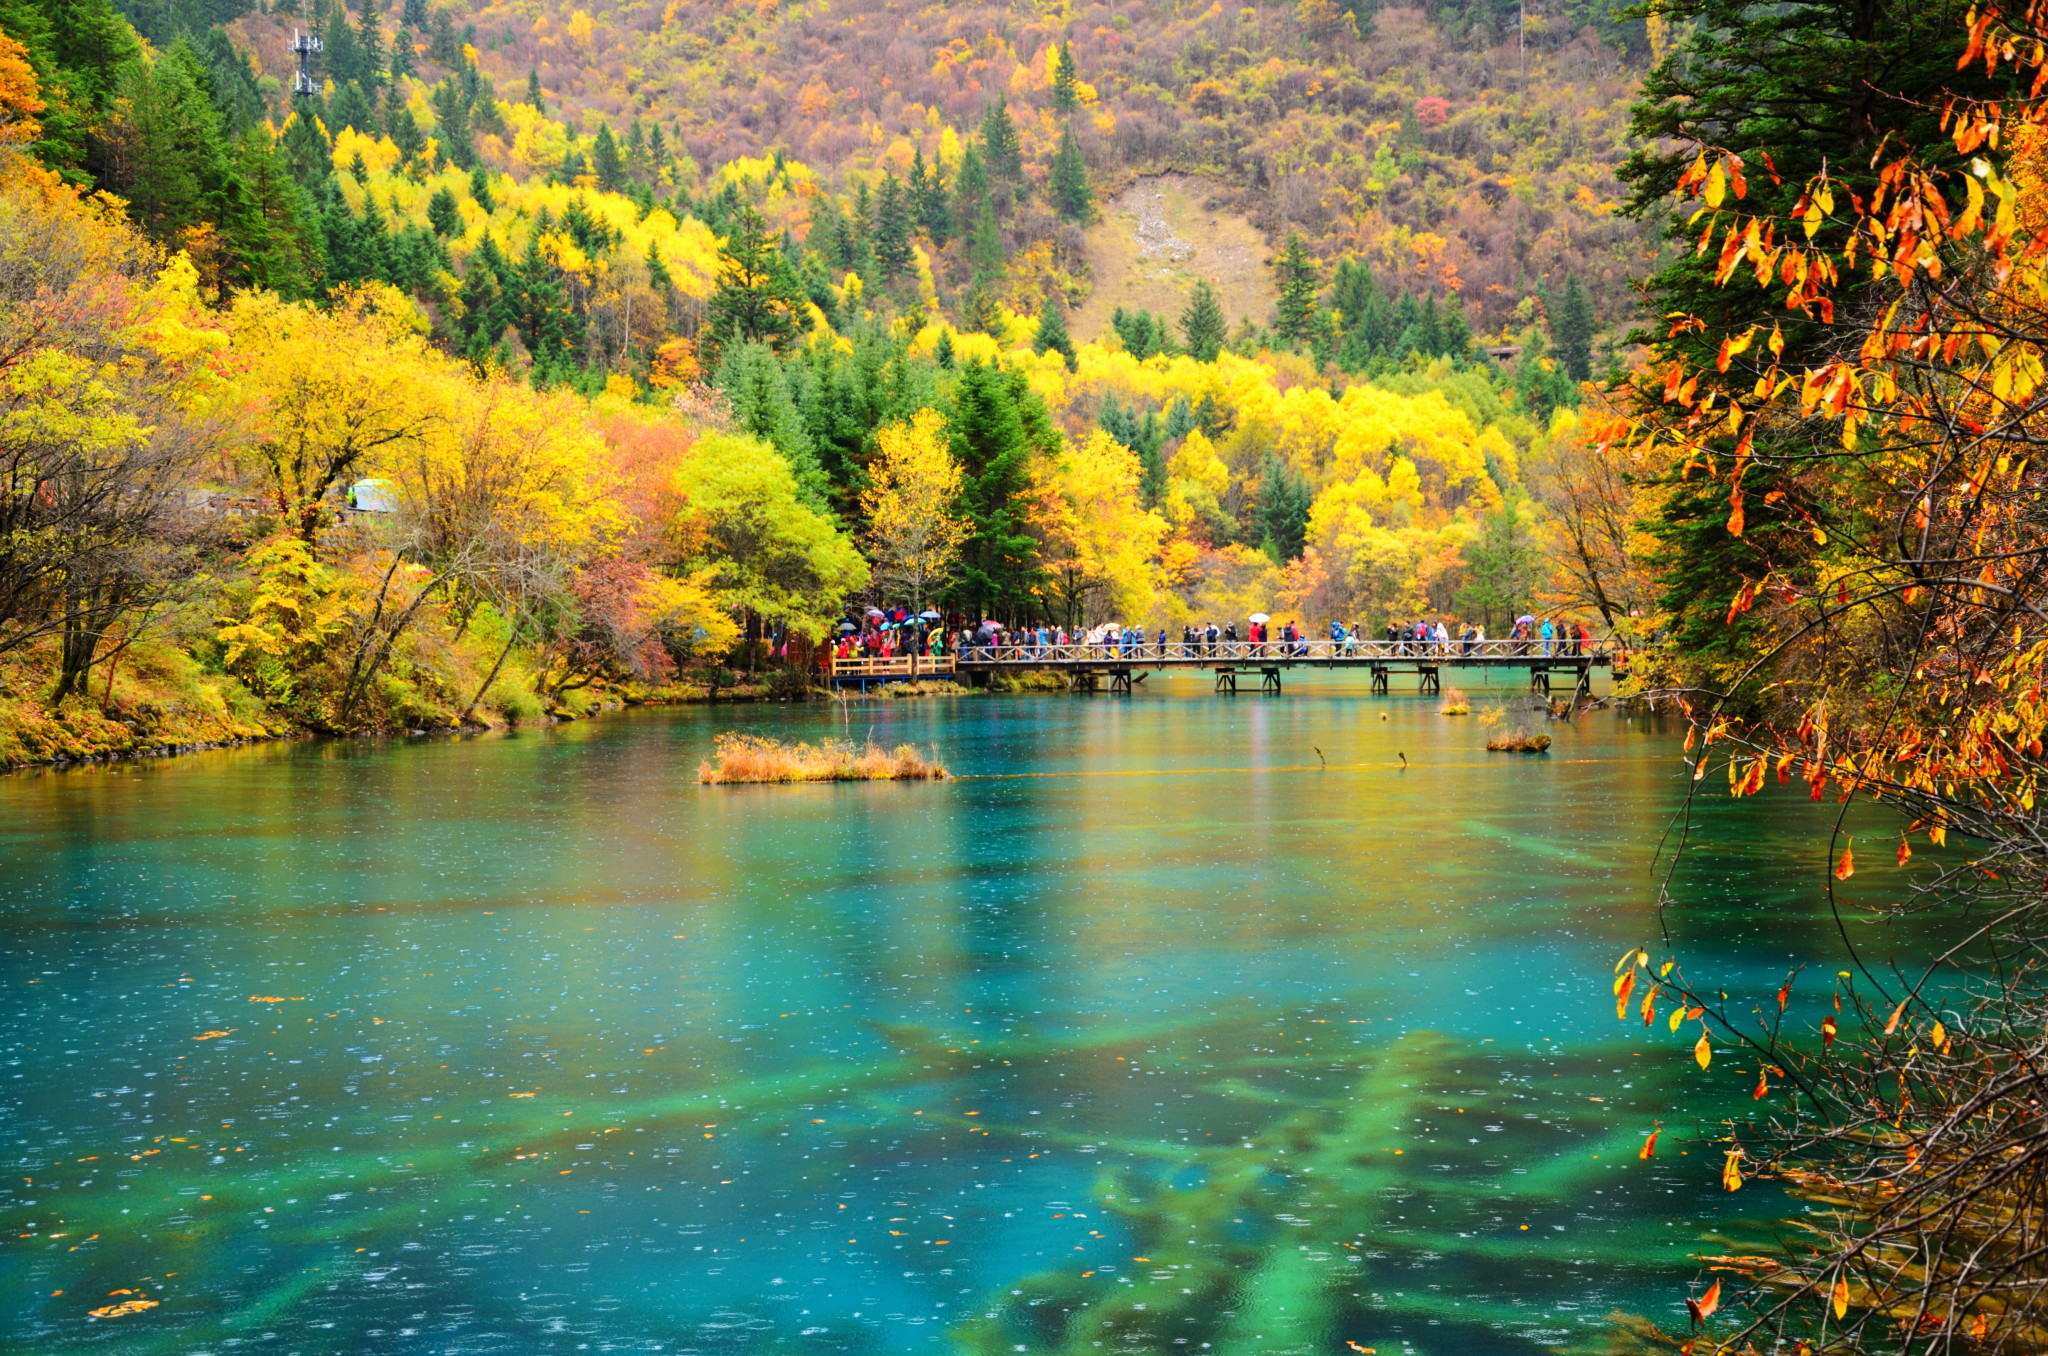 位于四川省阿坝的九寨沟因美丽的自然景观,被誉为"美丽的童话世界"